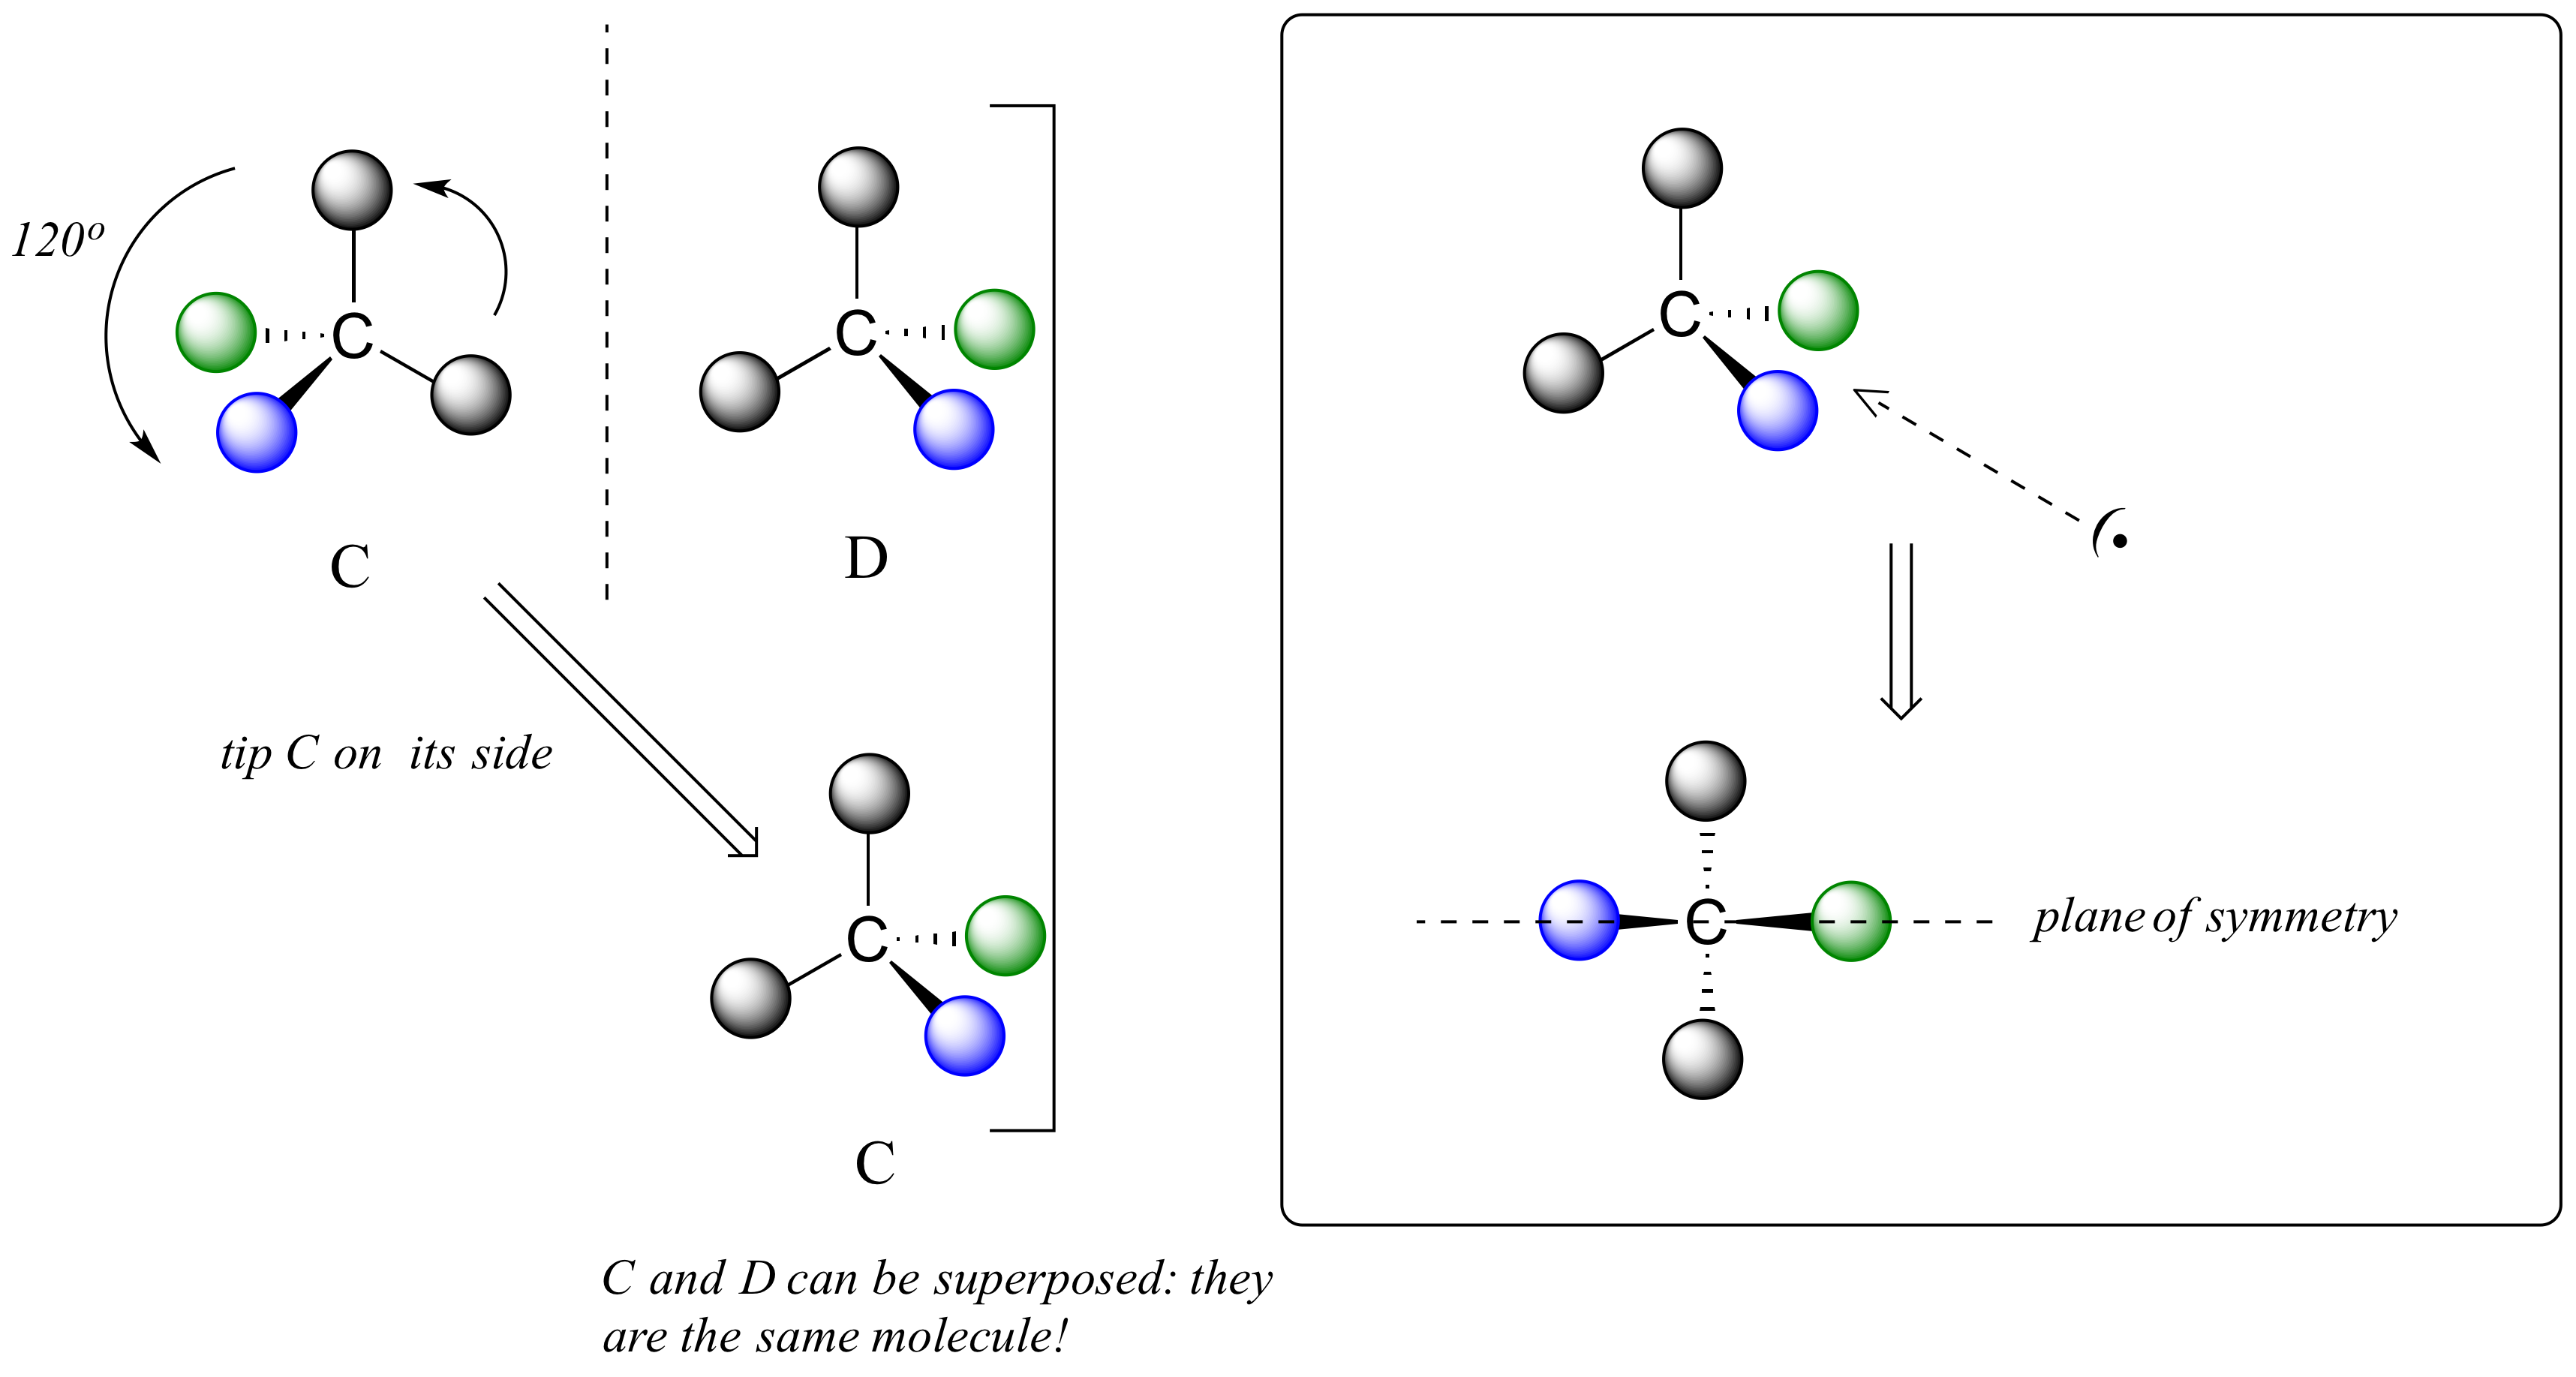 Moléculas C y D (carbono con dos átomos negros, uno azul y otro verde) separadas por plano espejo. C giró 120 grados o se inclinó de lado. C y D pueden superponerse: son la misma molécula. Cuando se mira desde un lado, la molécula tiene un plano de simetría.